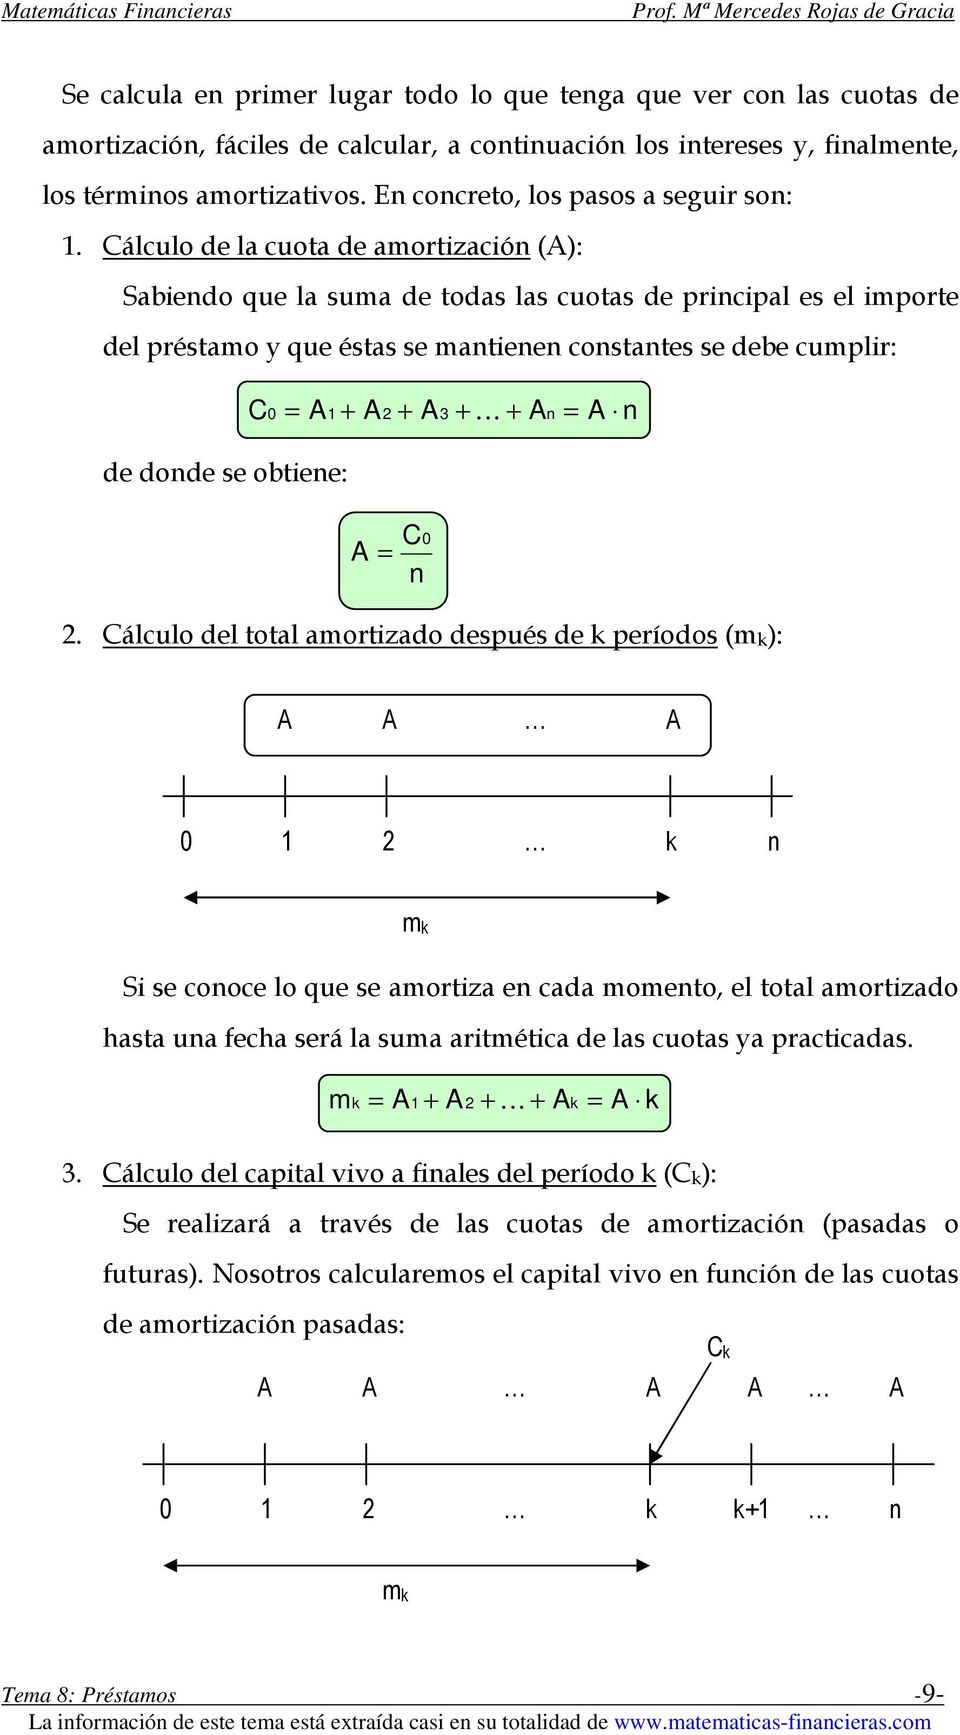 Cálculo de la cuota de amortzacón (): Sabendo que la suma de todas las cuotas de prncpal es el mporte del préstamo y que éstas se mantenen constantes se debe cumplr: C = 1 + 2 + 3 + K + n = n de